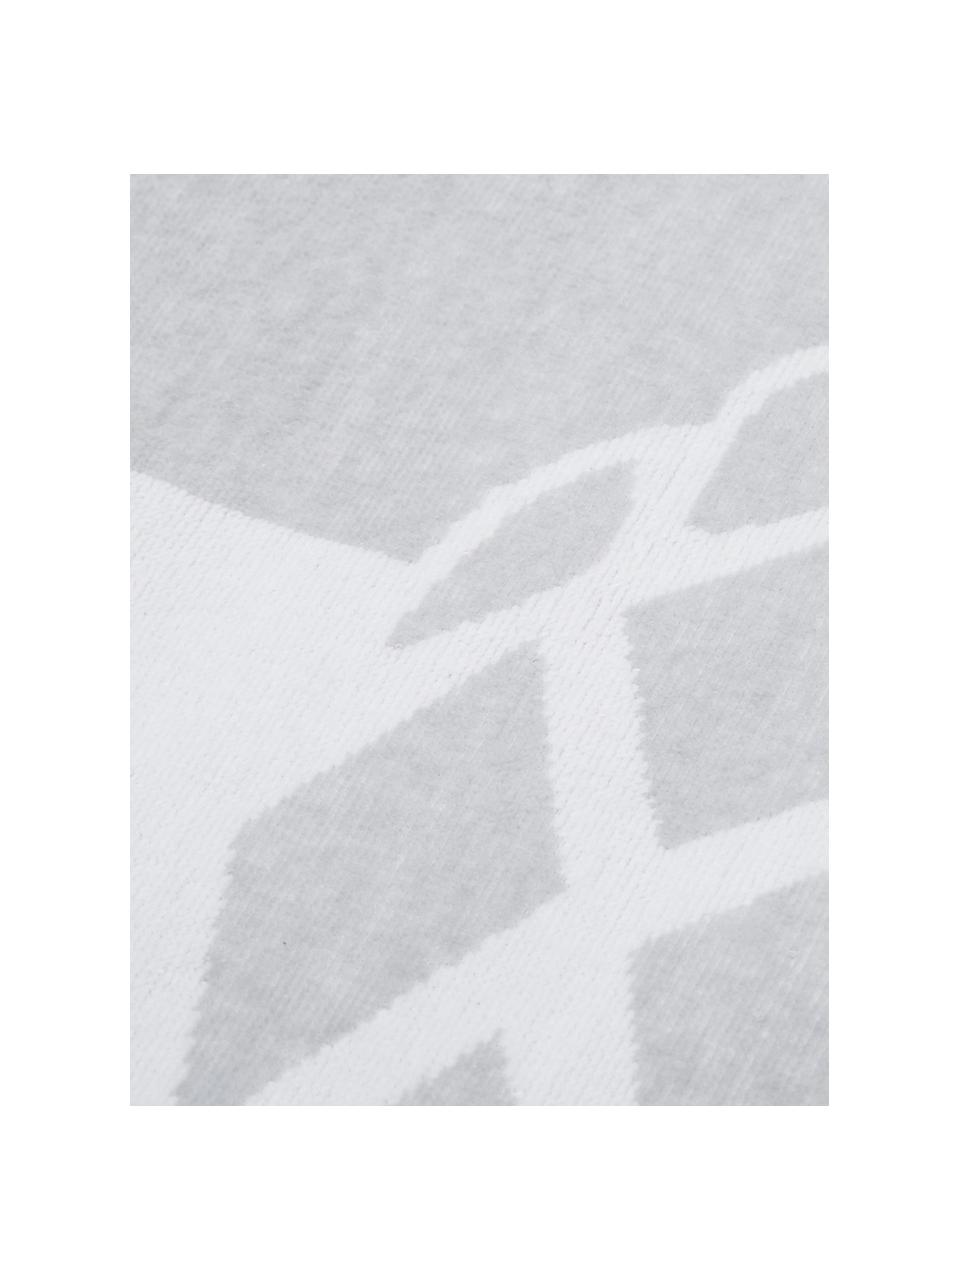 Gestreiftes Strandtuch Asan mit Ananas-Motiv, 100% Baumwolle
leichte Qualität 380 g/m², Grau, Weiß, 80 x 160 cm